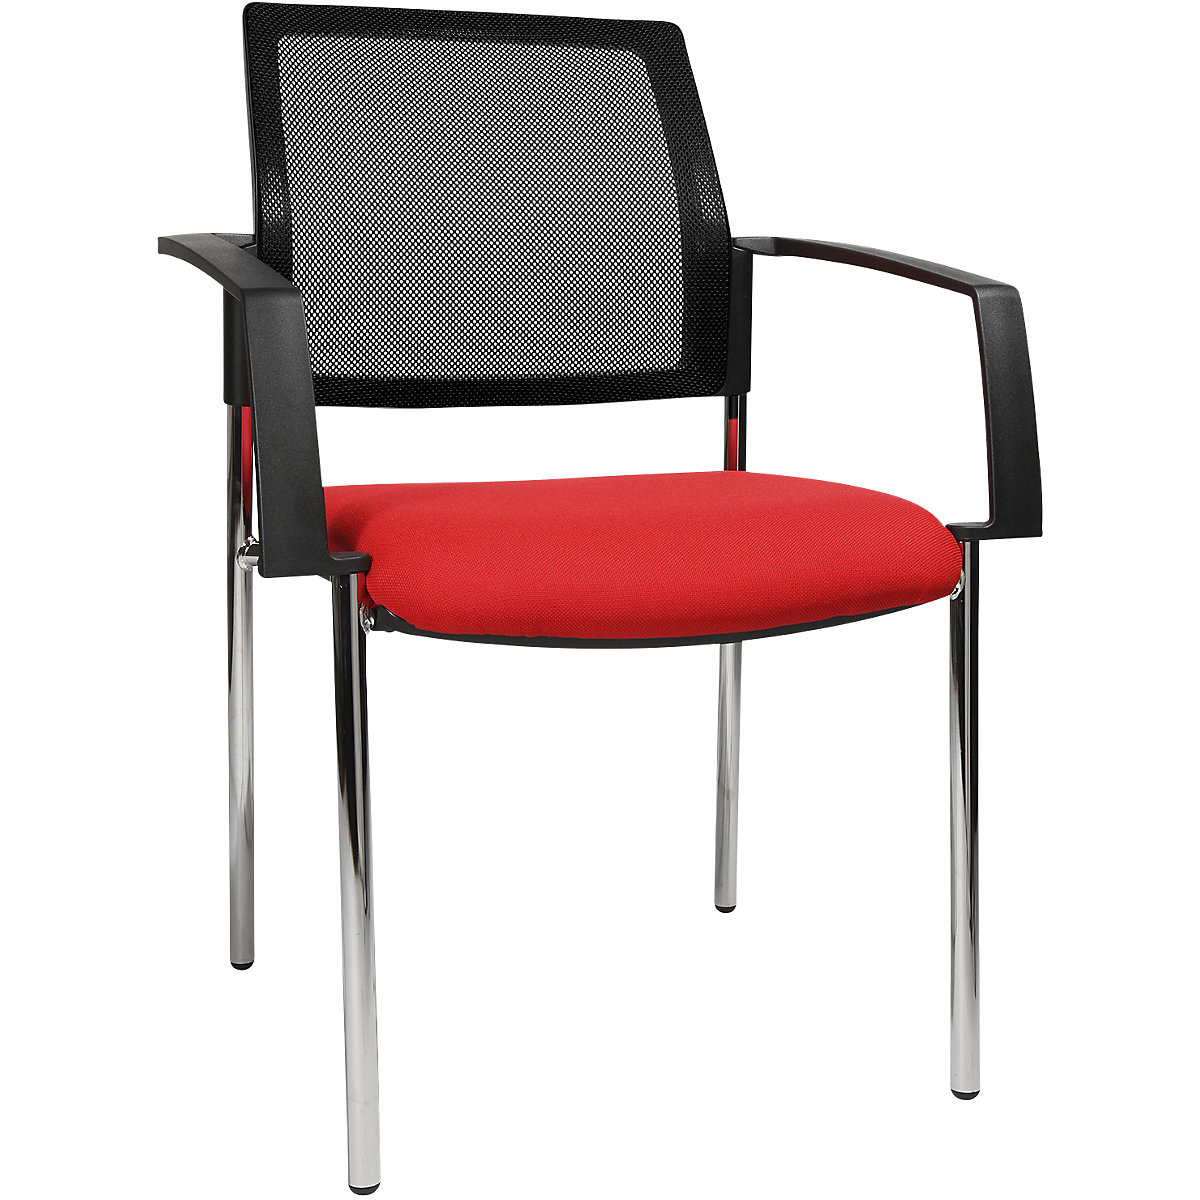 Mesh stapelstoel – Topstar, 4 stoelpoten, VE = 2 stuks, zitting rood, frame chroom-6